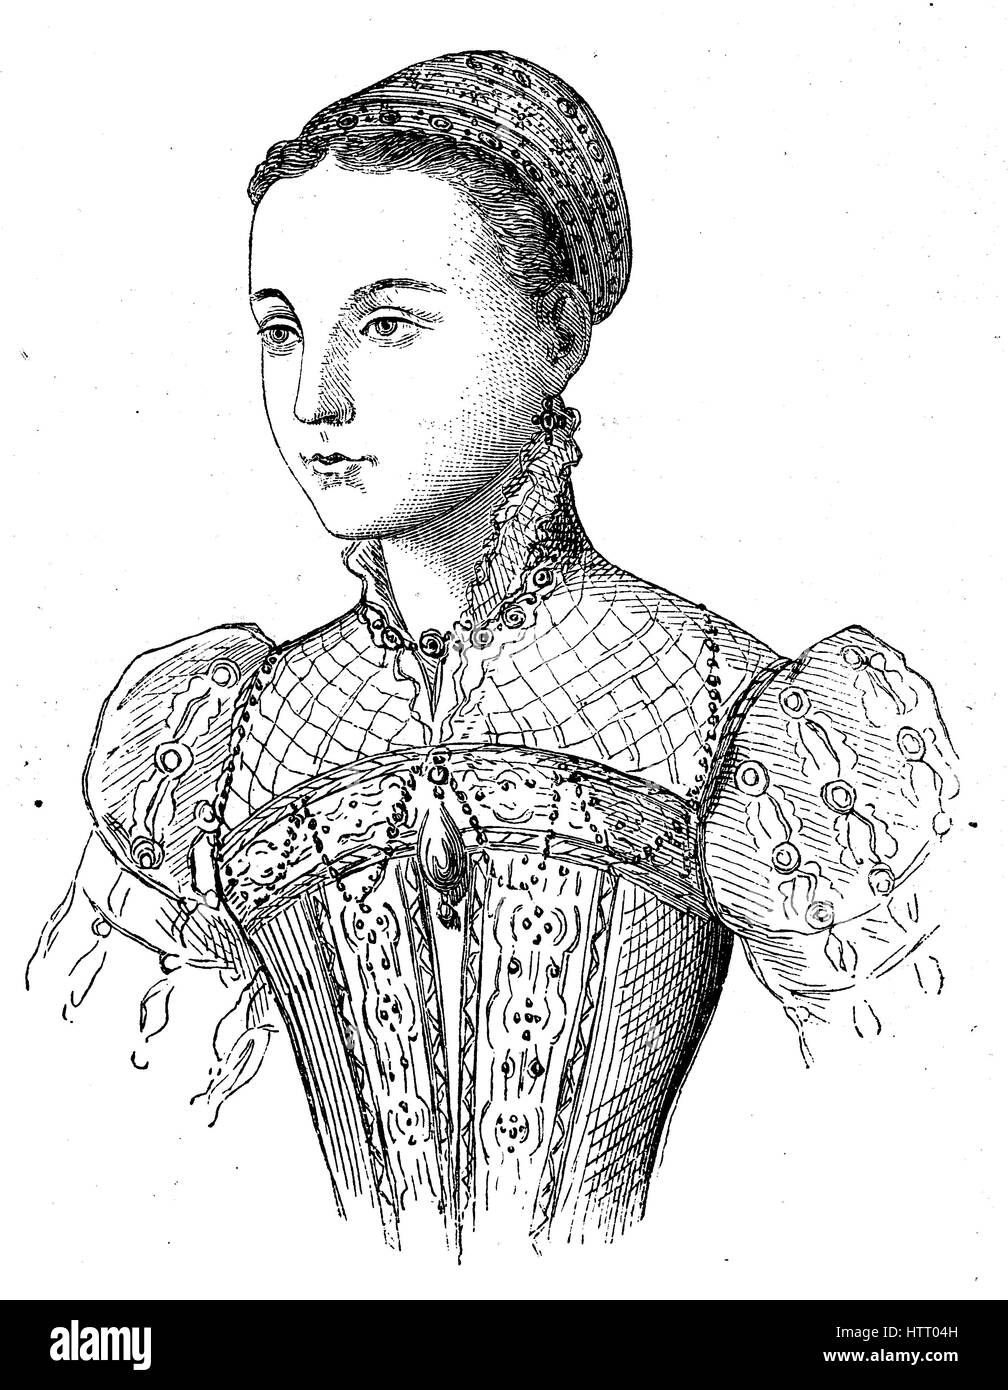 Mary, Queen of Scots, 8 Dezember 1542-8 Februar 1587, auch bekannt als Mary Stuart oder Mary I von Schottland, regierte über Schottland von 14 Dezember 1542 bis 24 Juli 1567, Reproduktion von einem Holzschnitt aus dem Jahr 1880, digital verbessert Stockfoto